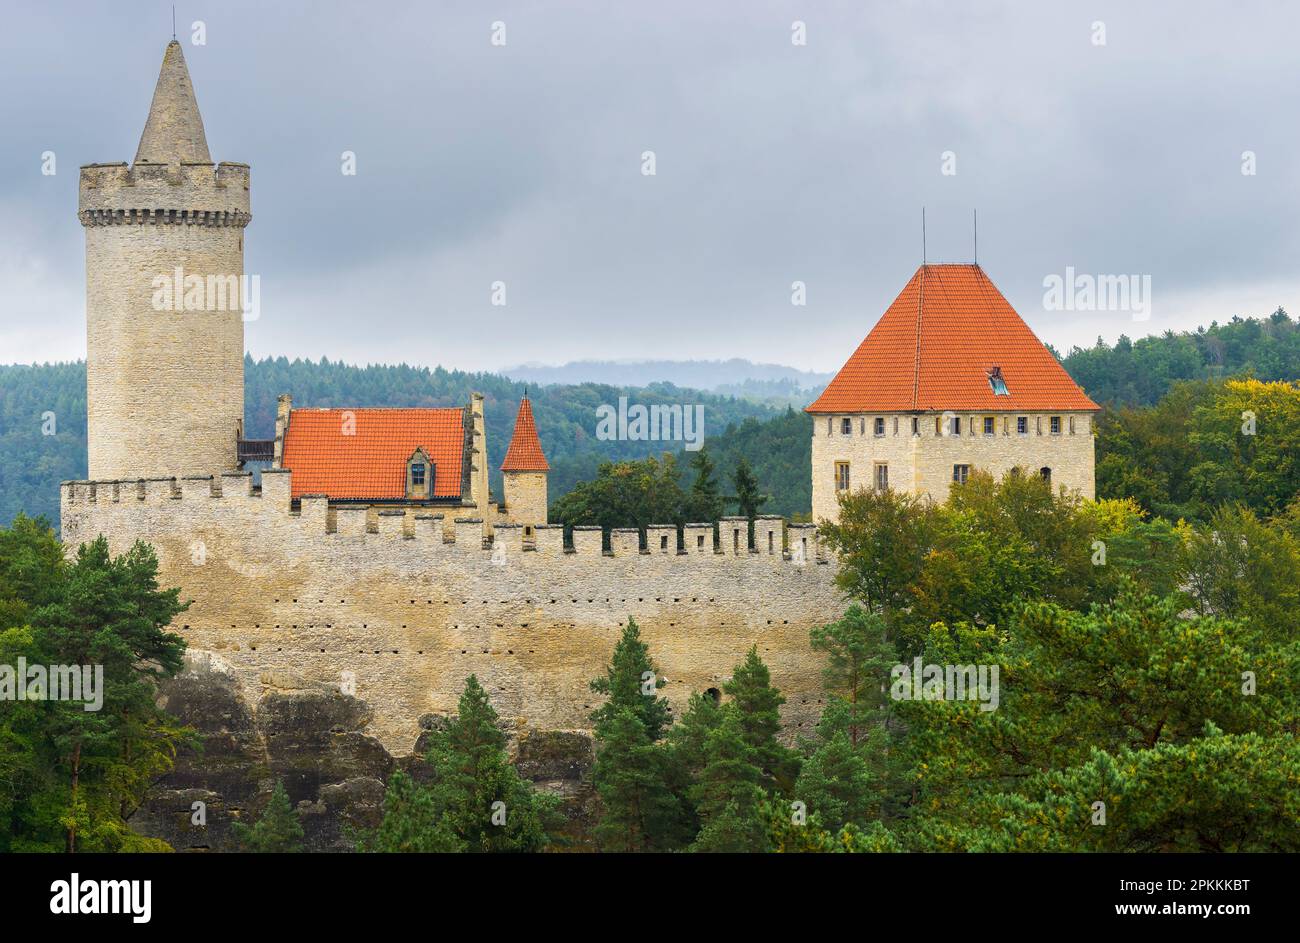 Castello di Kokorin, Area paesaggistica protetta di Kokorinsko, Boemia centrale, Repubblica Ceca (Czechia), Europa Foto Stock